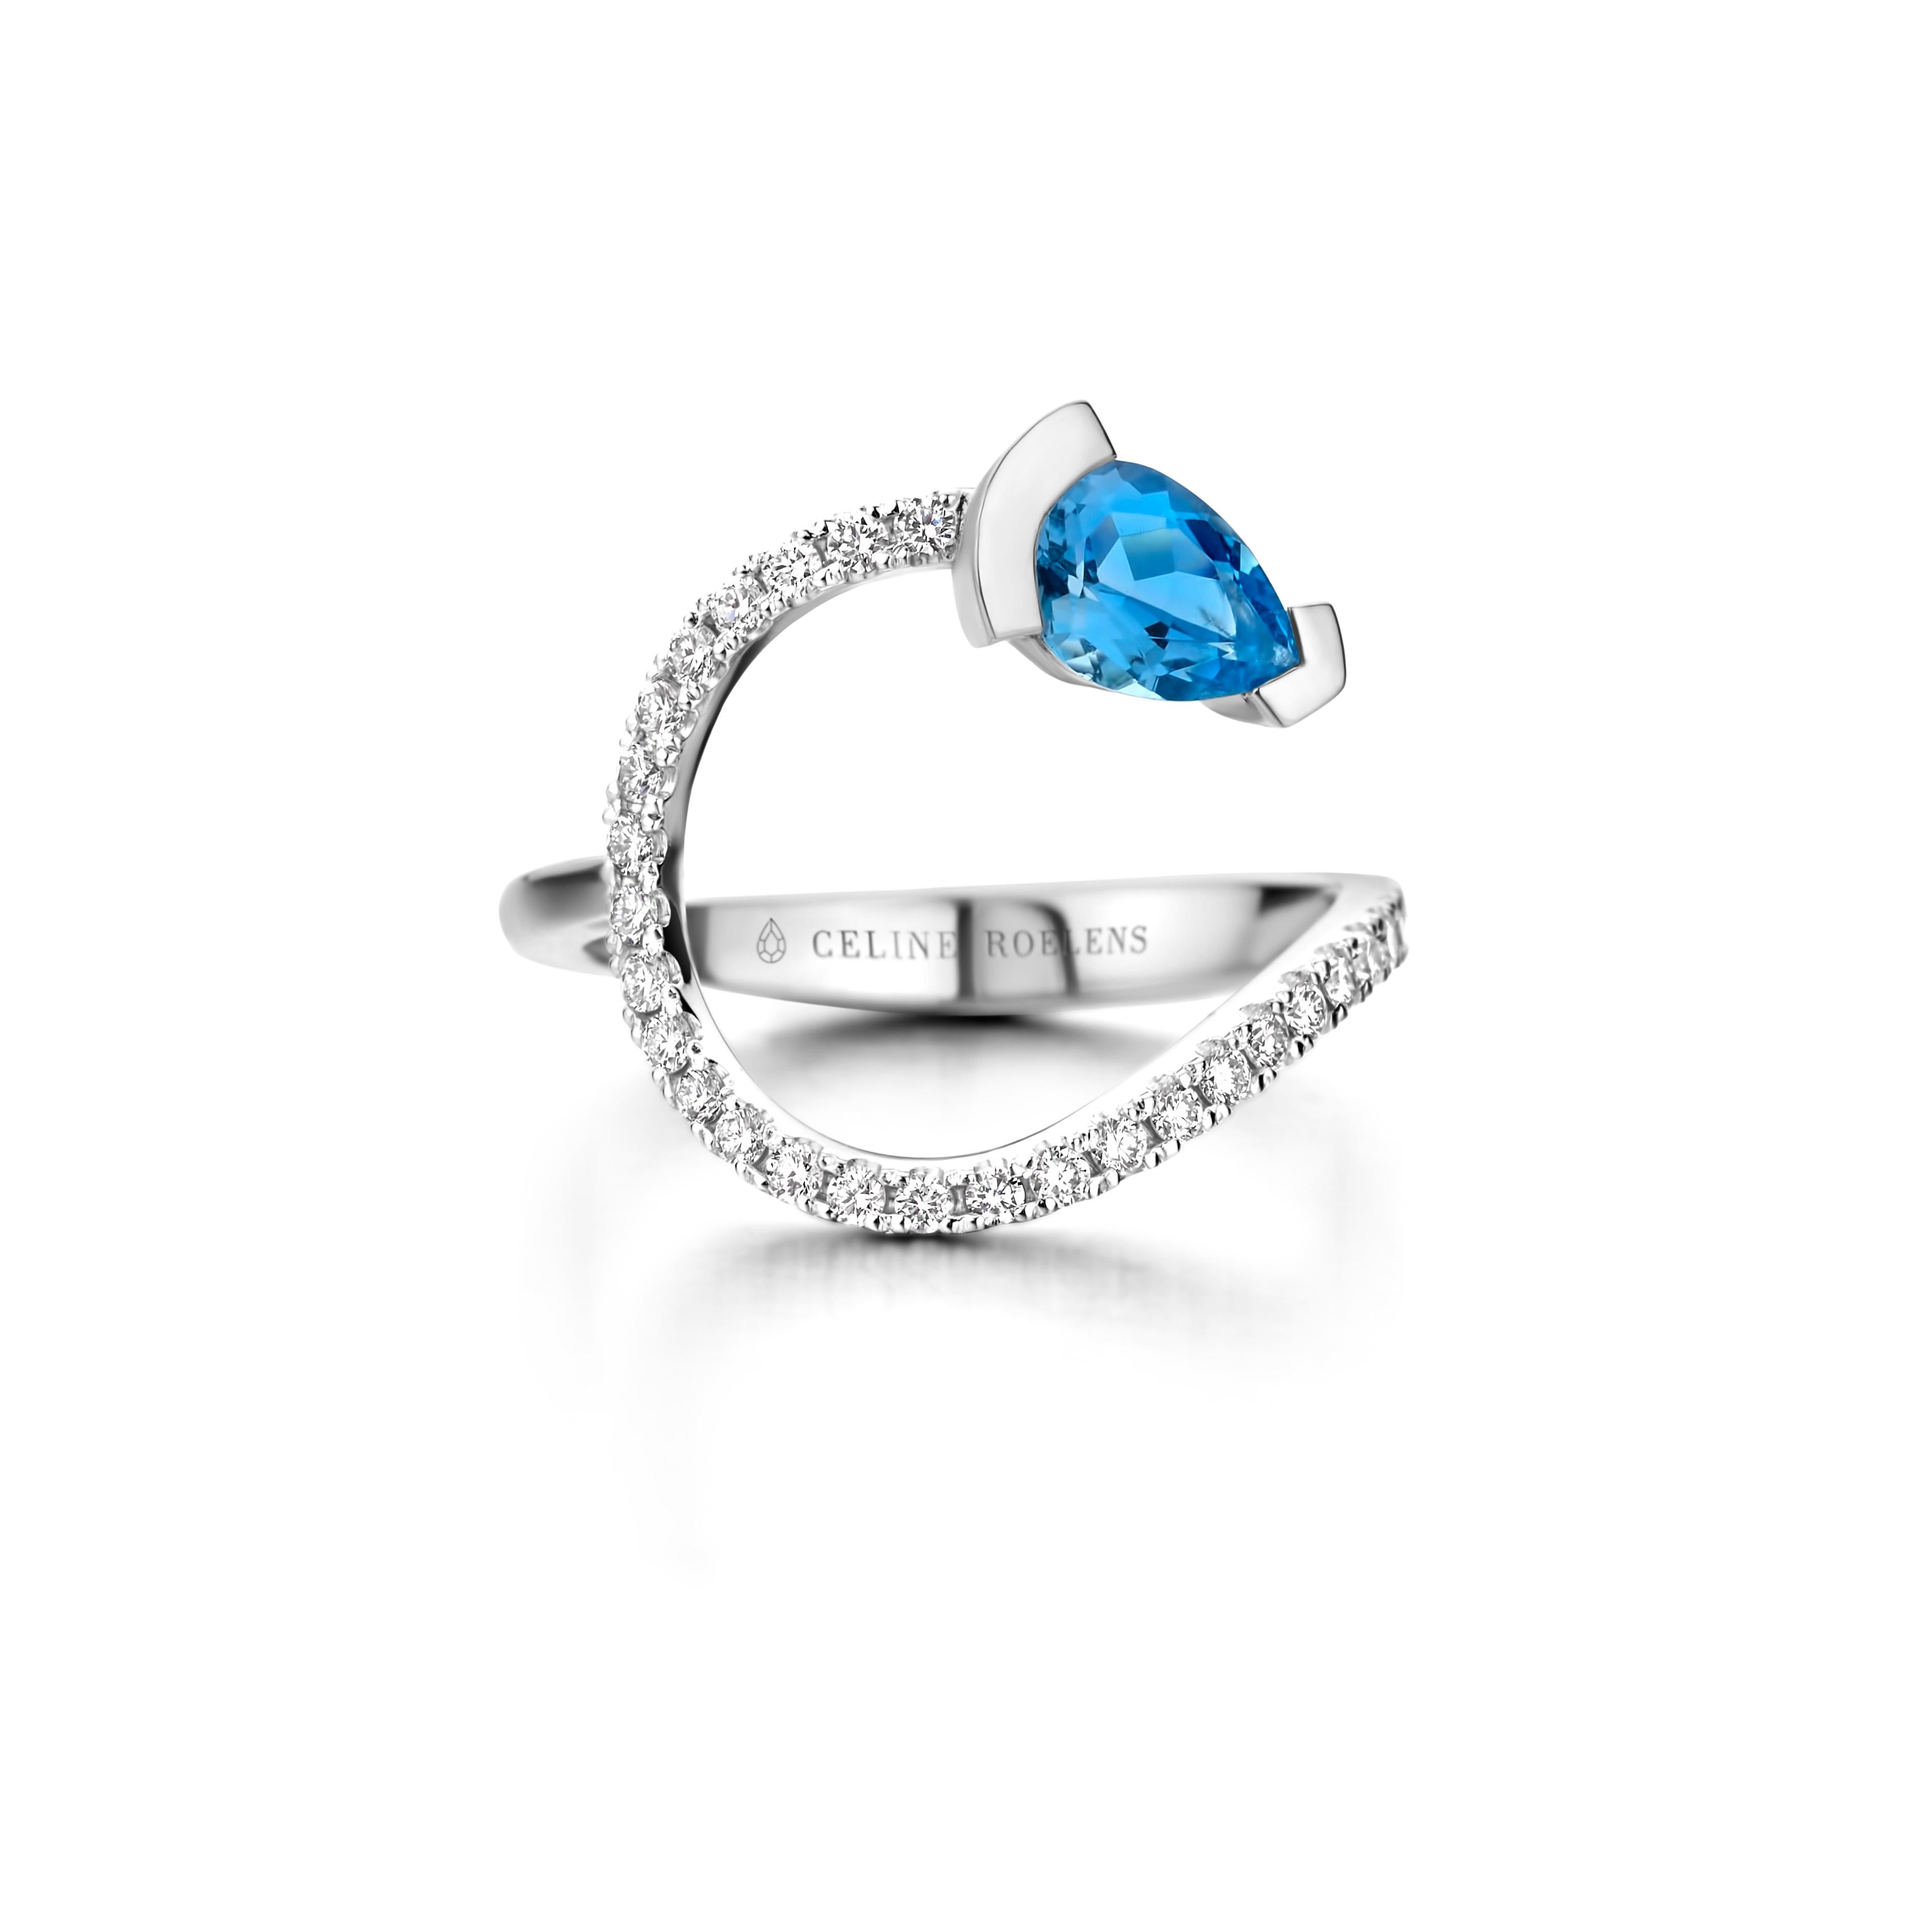 ADELINE geschwungener Ring aus 18 Karat Roségold, besetzt mit einem birnenförmigen Santa-Maria-Aquamarin und 0,33 Karat Diamanten mit weißem Brillantschliff - Qualität VS F.